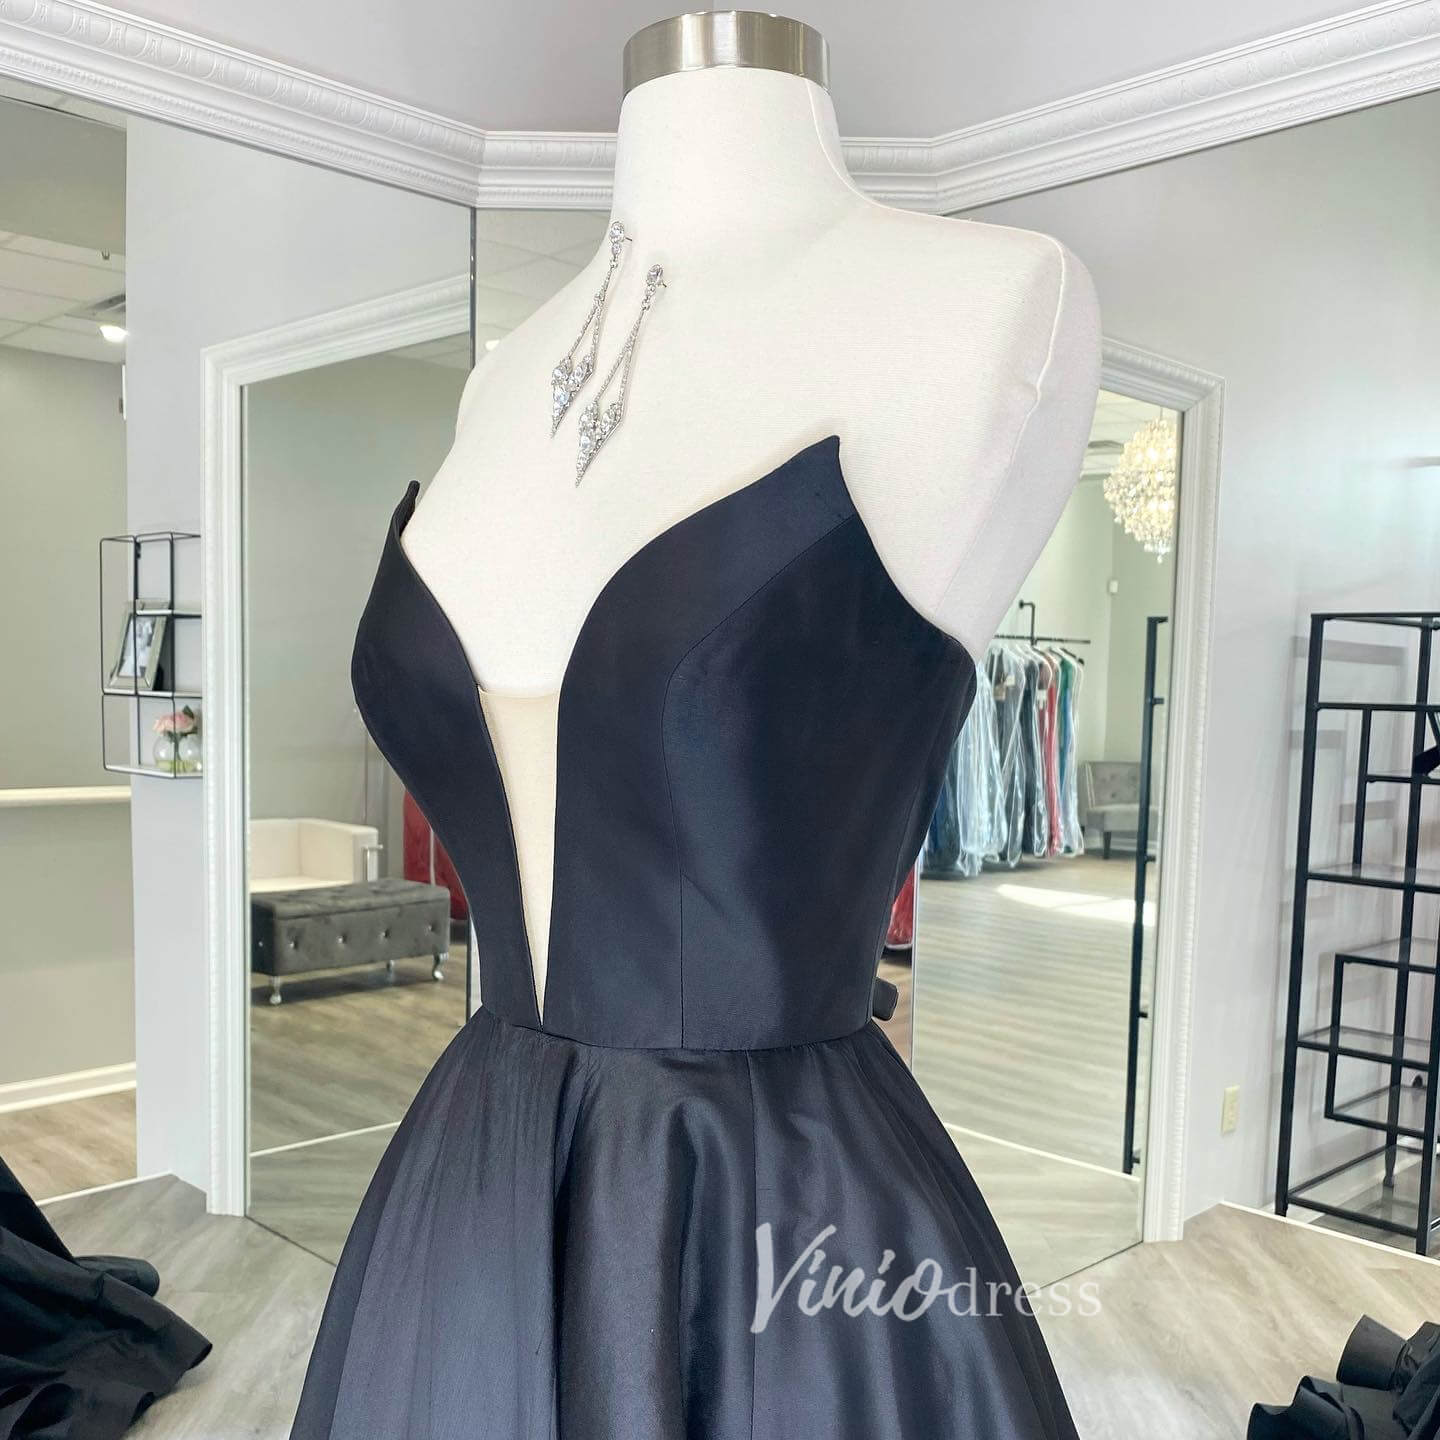 Black Strapless Prom Dresses Plunging V-Neck Evening Dress FD3039-prom dresses-Viniodress-Viniodress